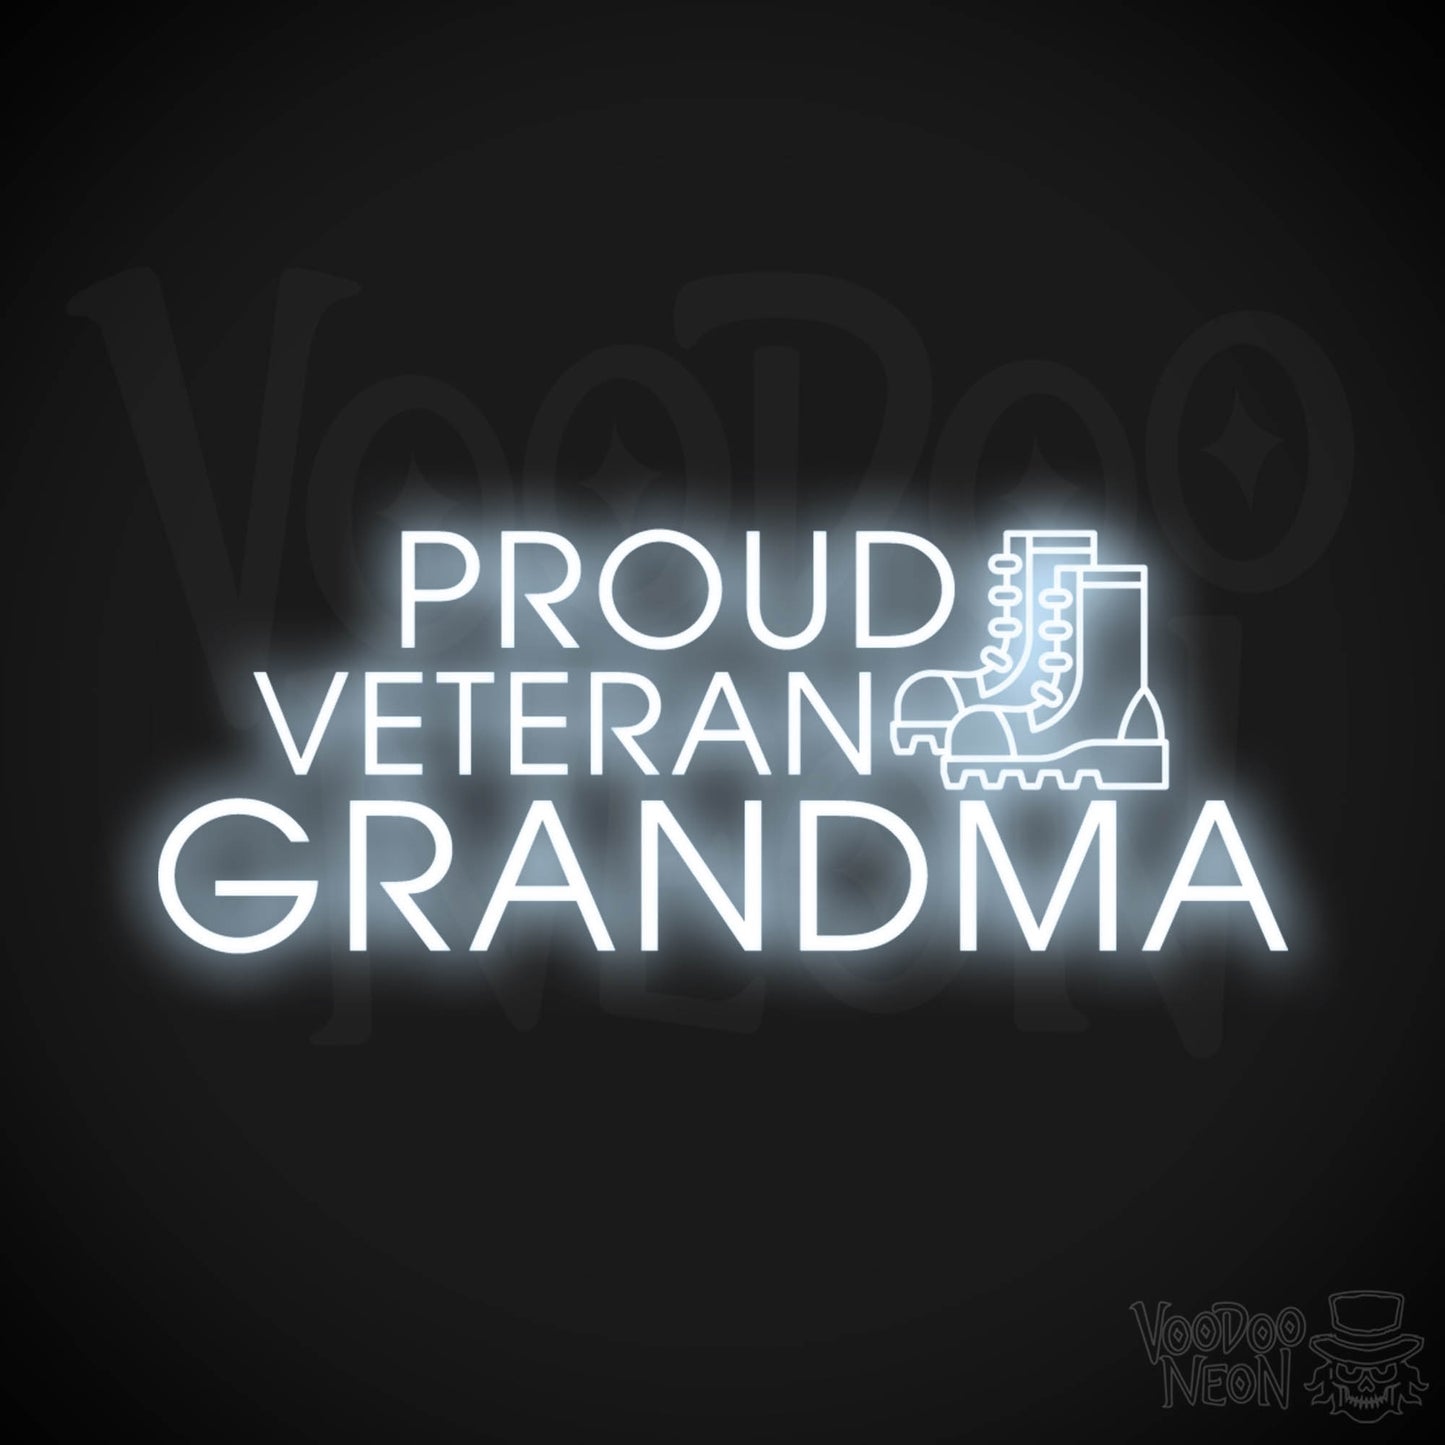 Proud Veteran Grandma Neon Sign - Proud Veteran Grandma Sign - Color Cool White